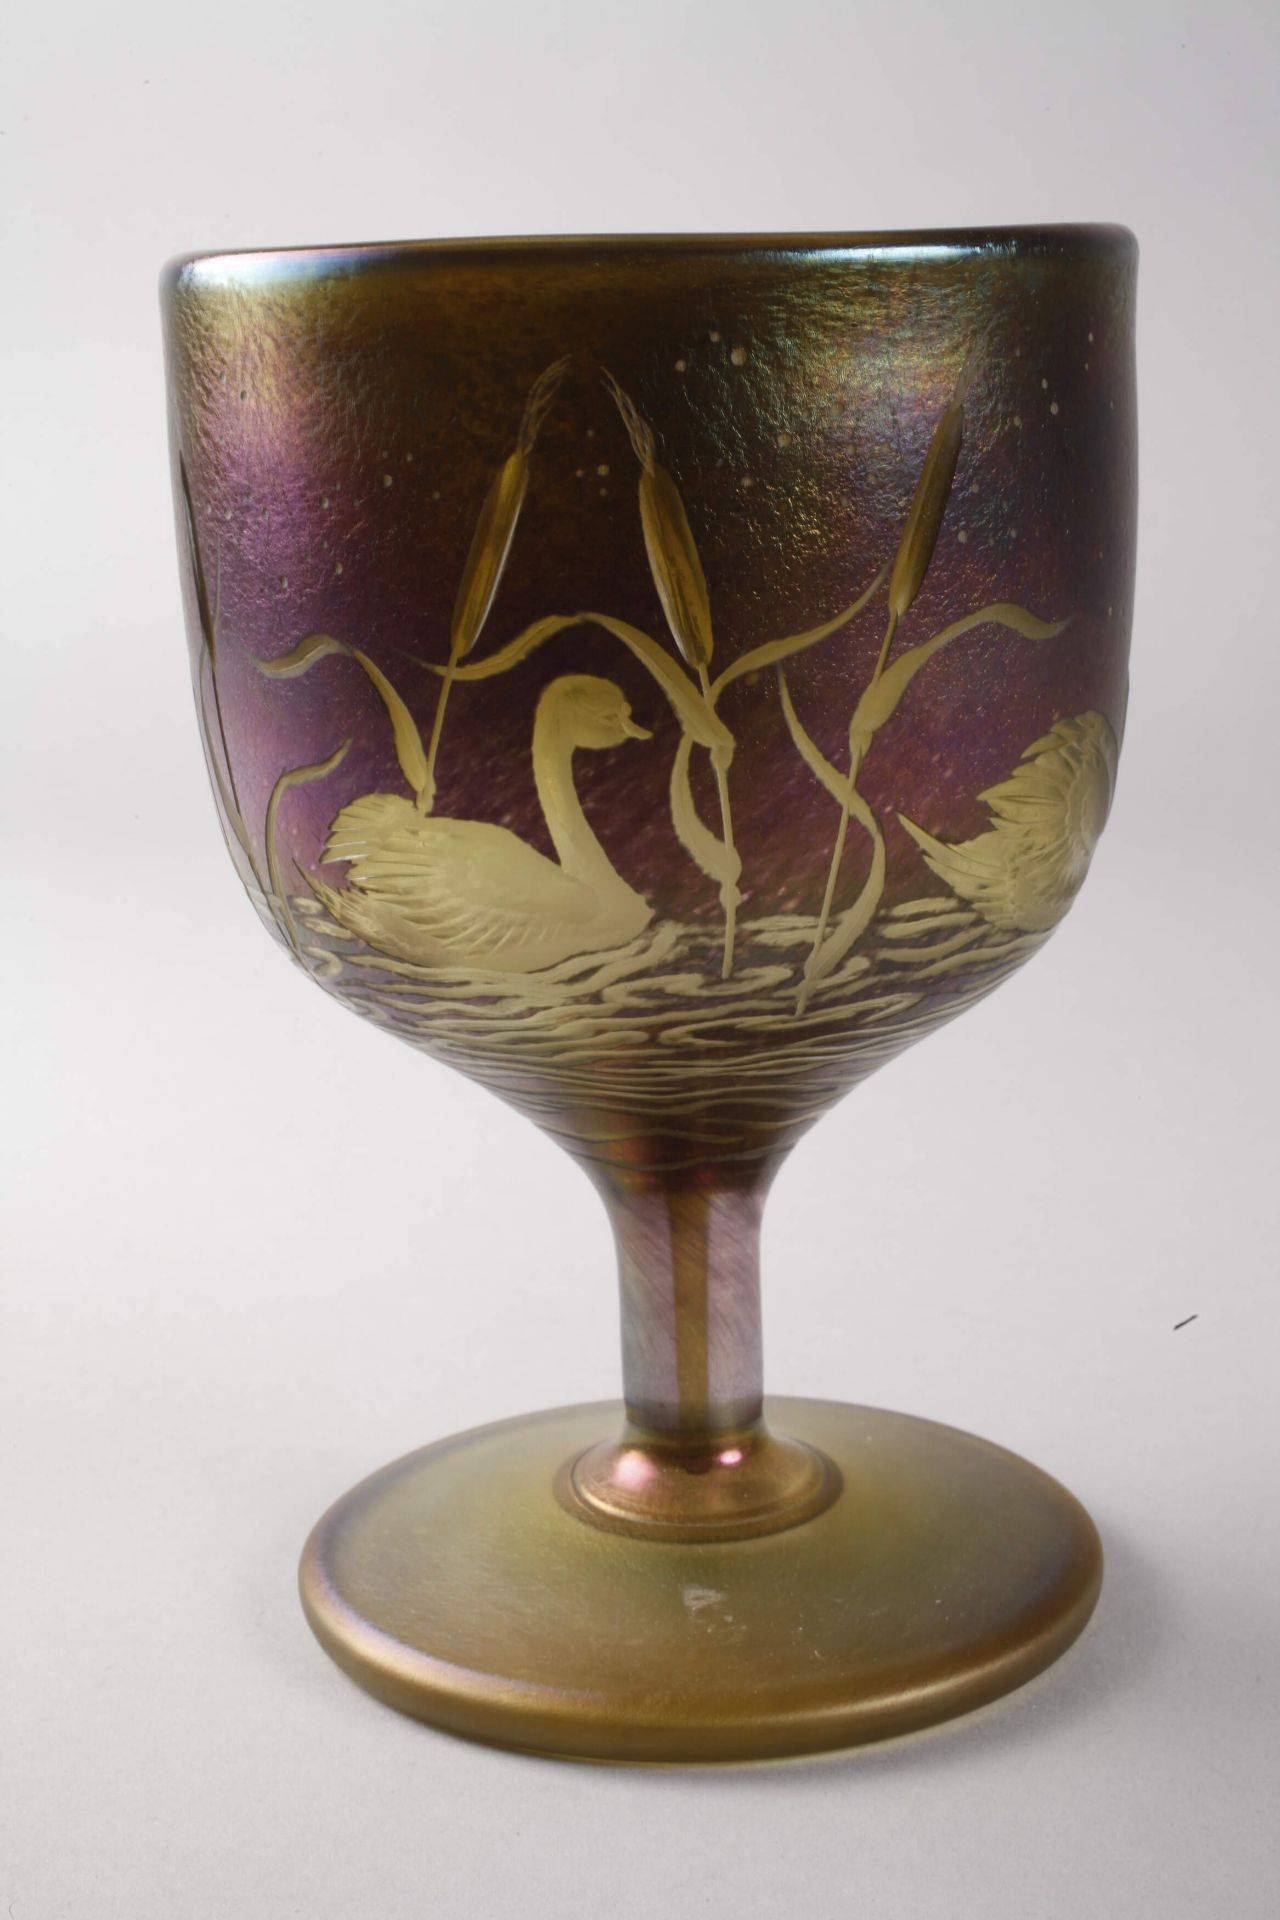 Goblet glass with swan motifsSchmid-Jacquet Goblet glass with swan motifs - Image 4 of 6